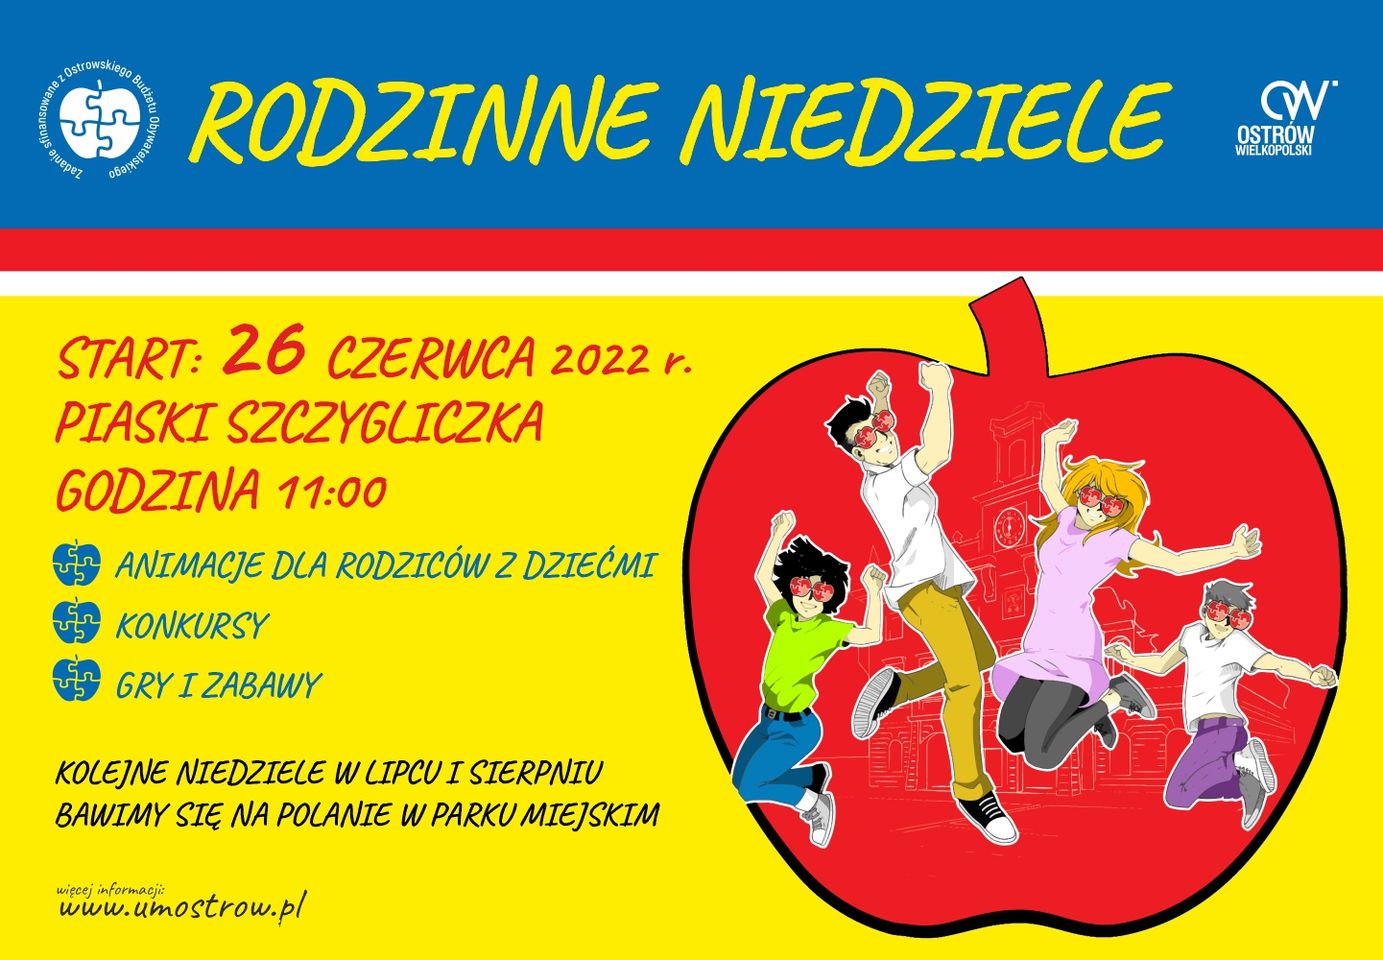 Plakat informujacy o "Rodzinnych niedzielach", które rozpoczną się 26 czerwca na Paskach-Szczygliczka